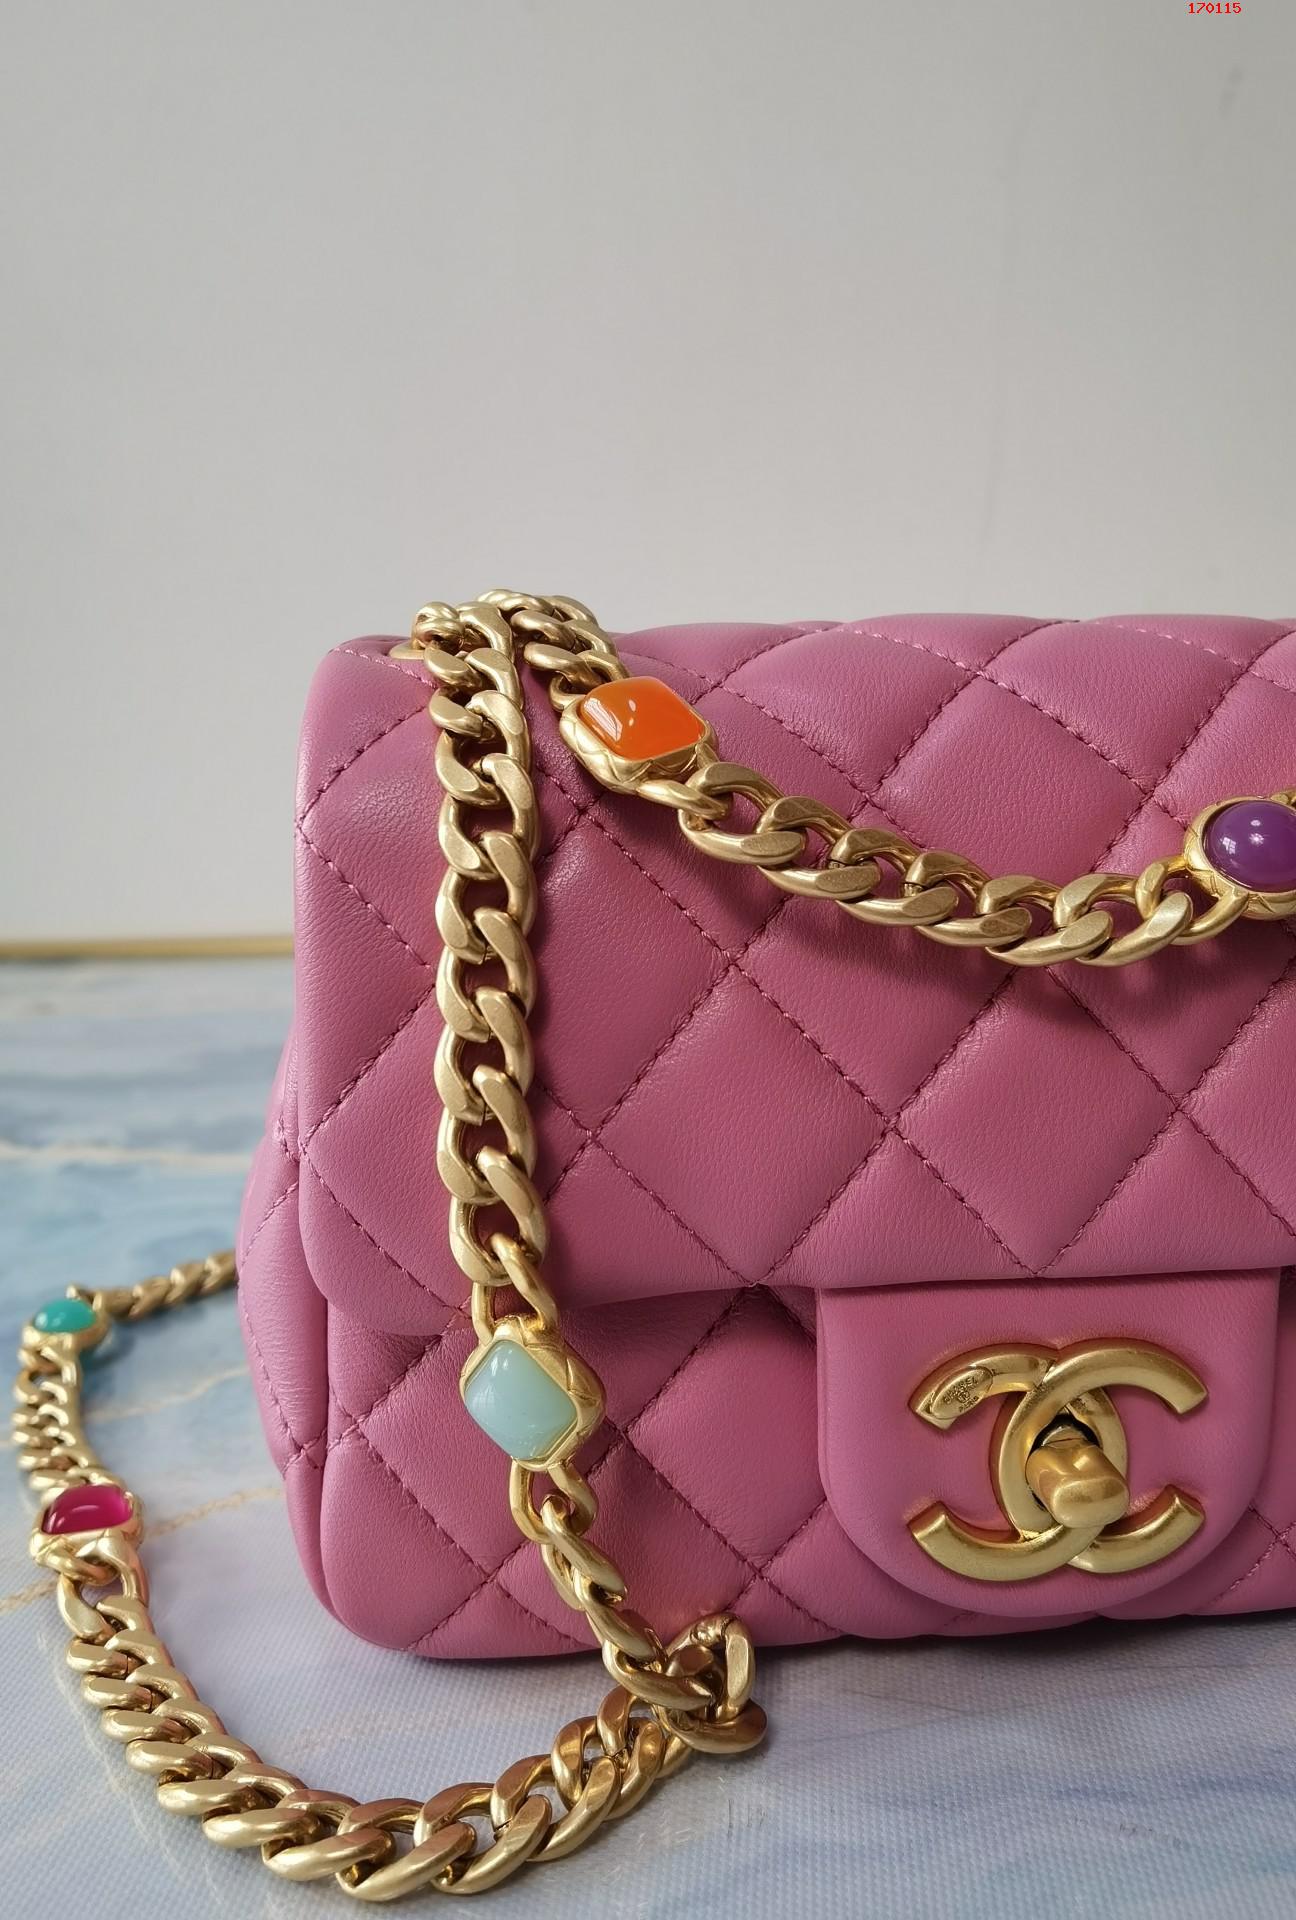 Chanel 粉红 21早春宝石链条包 爆款五彩宝石口盖包 高仿香奈儿链条包 AS2379